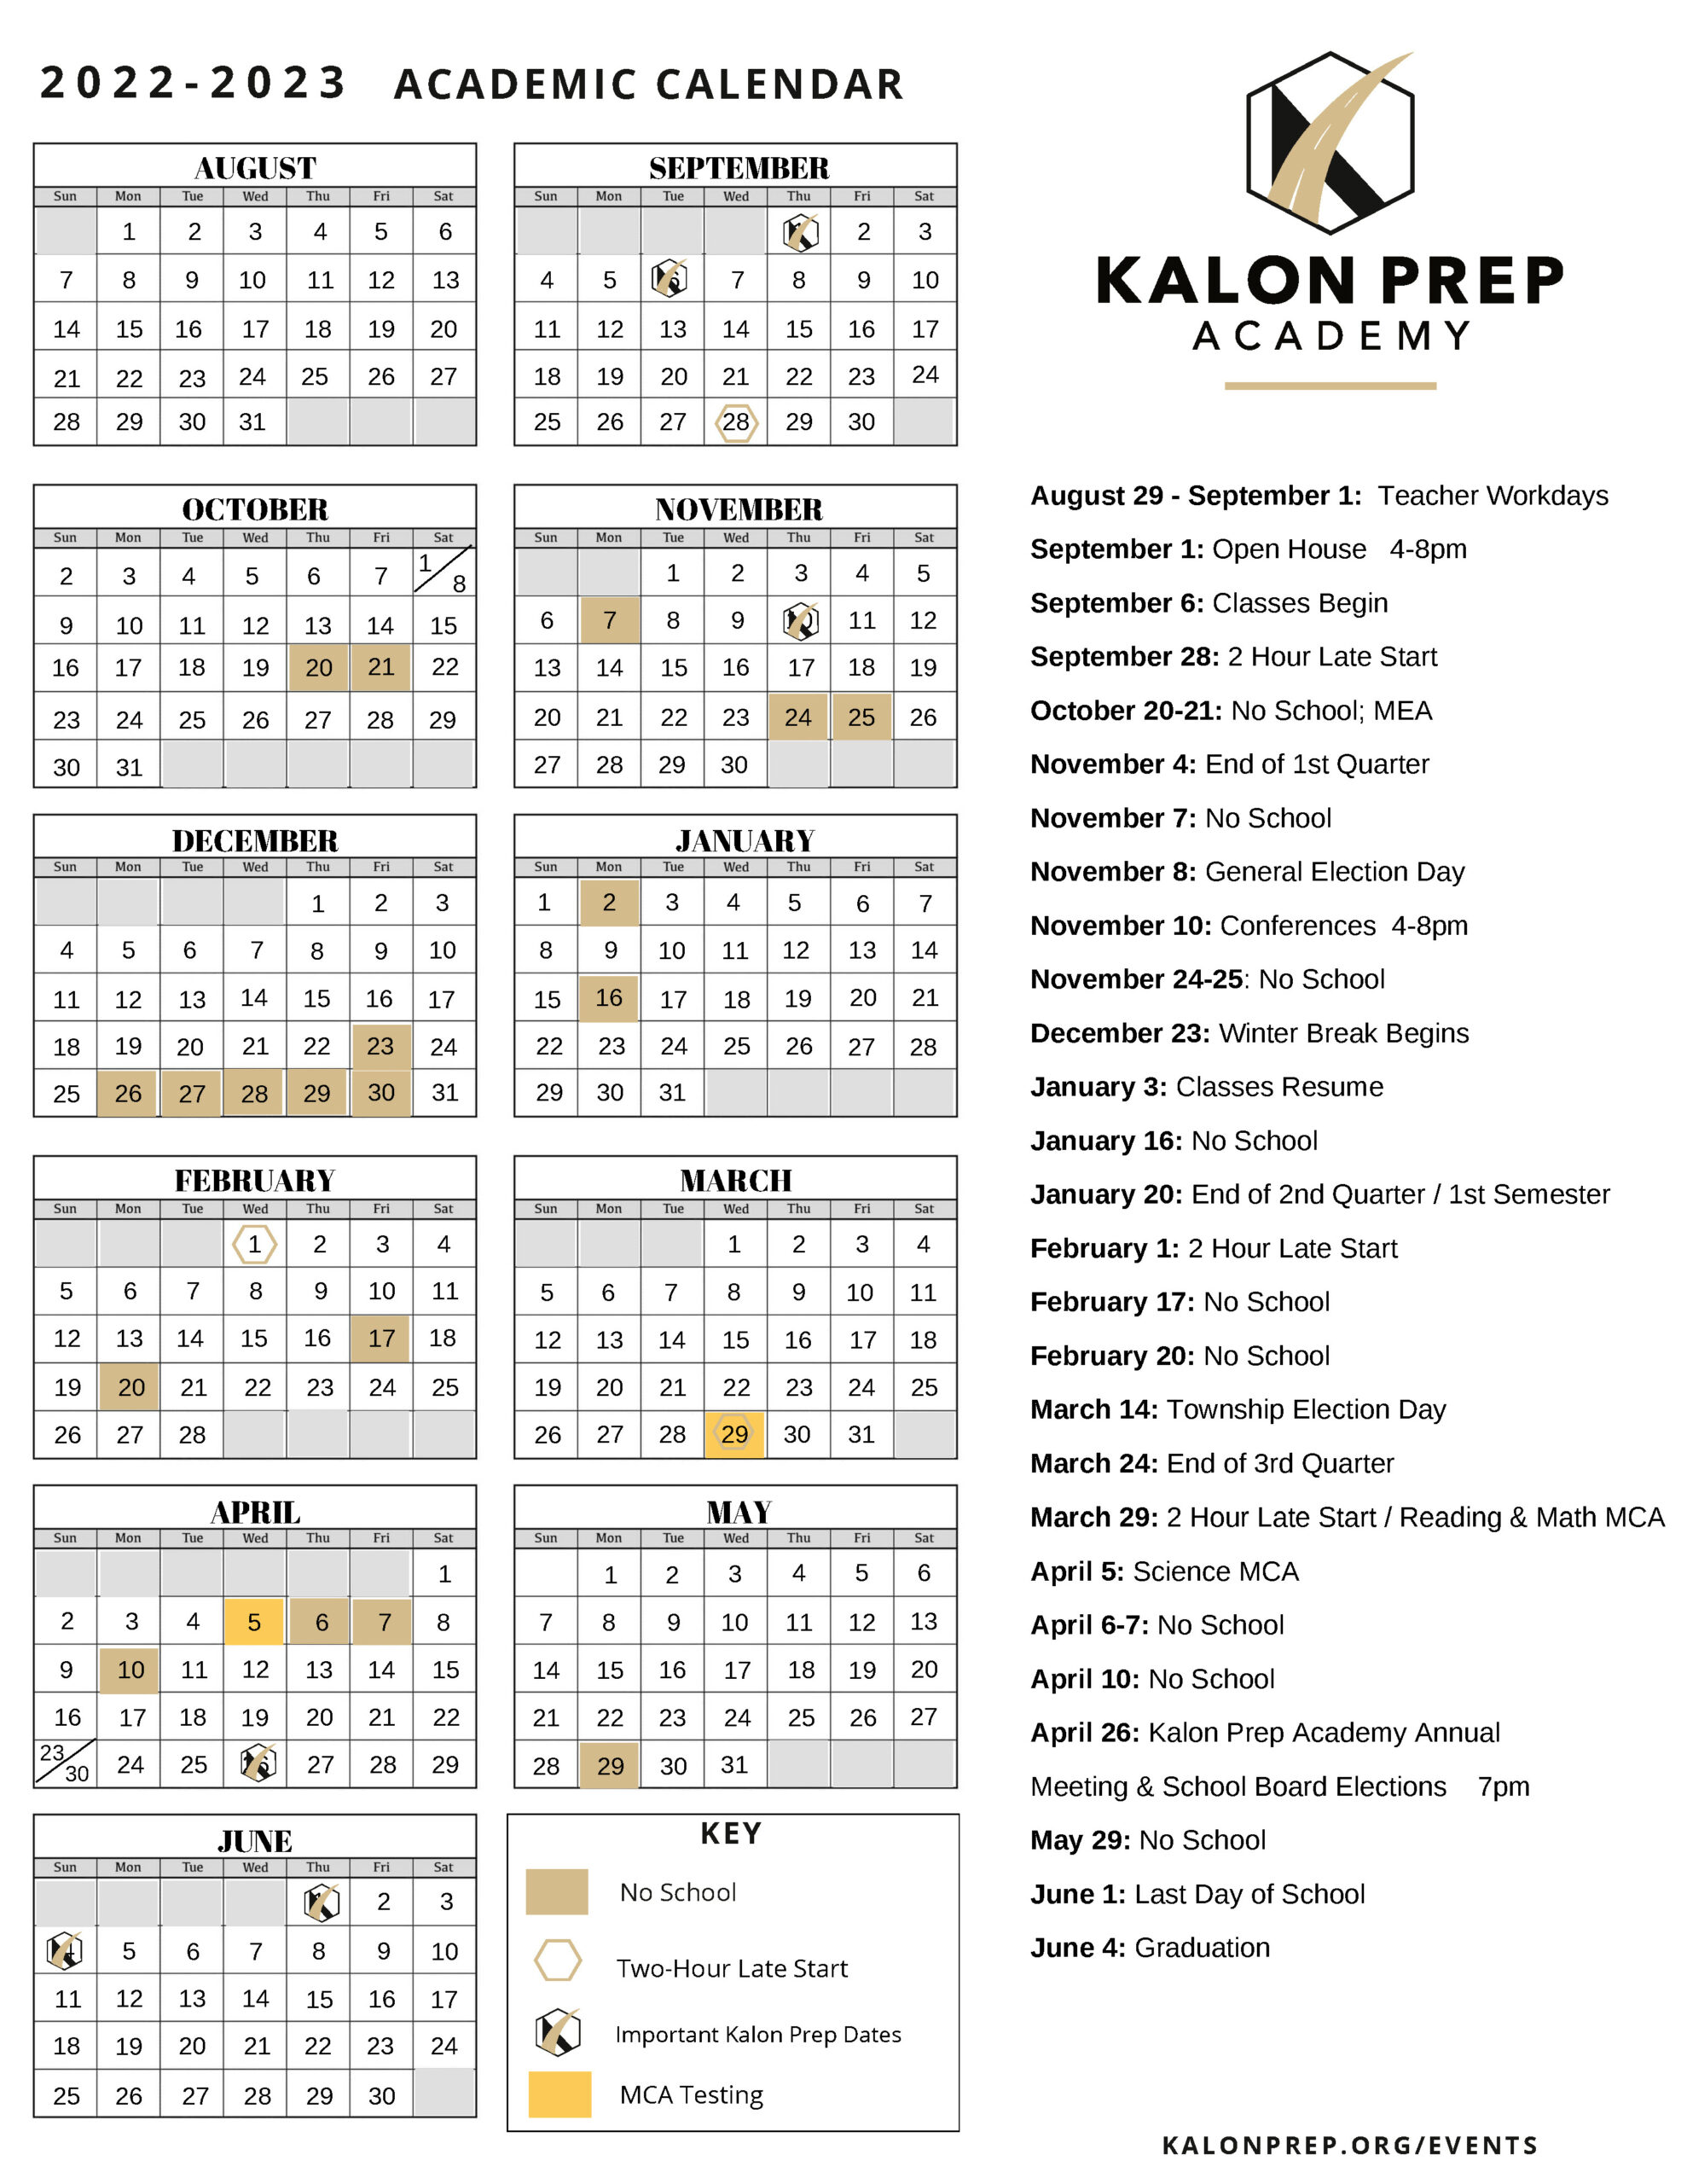 kalon prep 2022-23 calendar